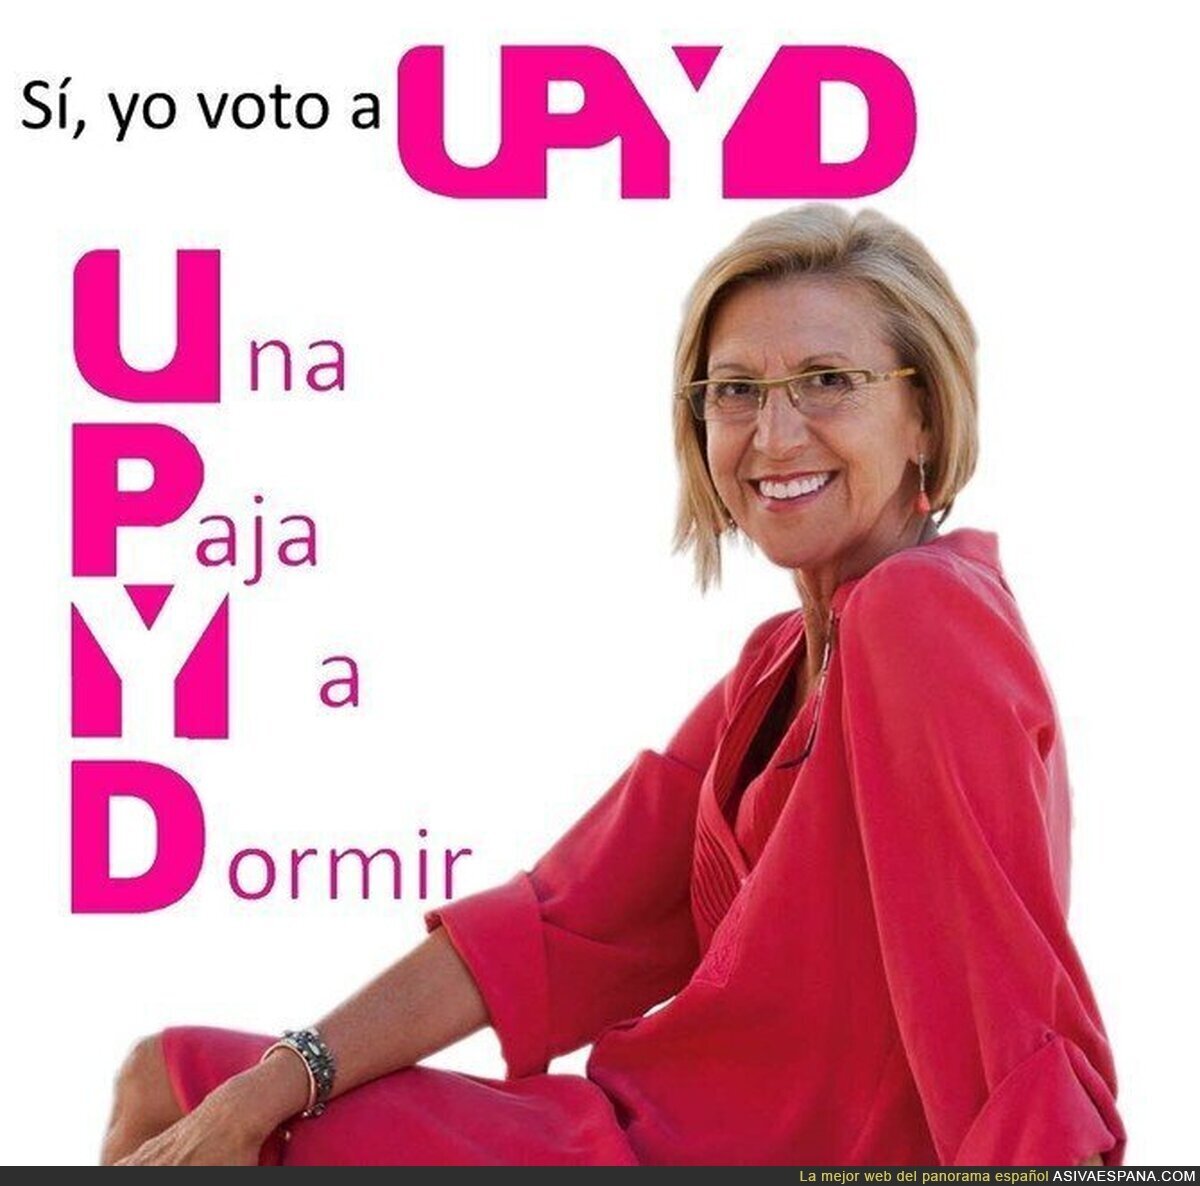 Las siglas de UPYD